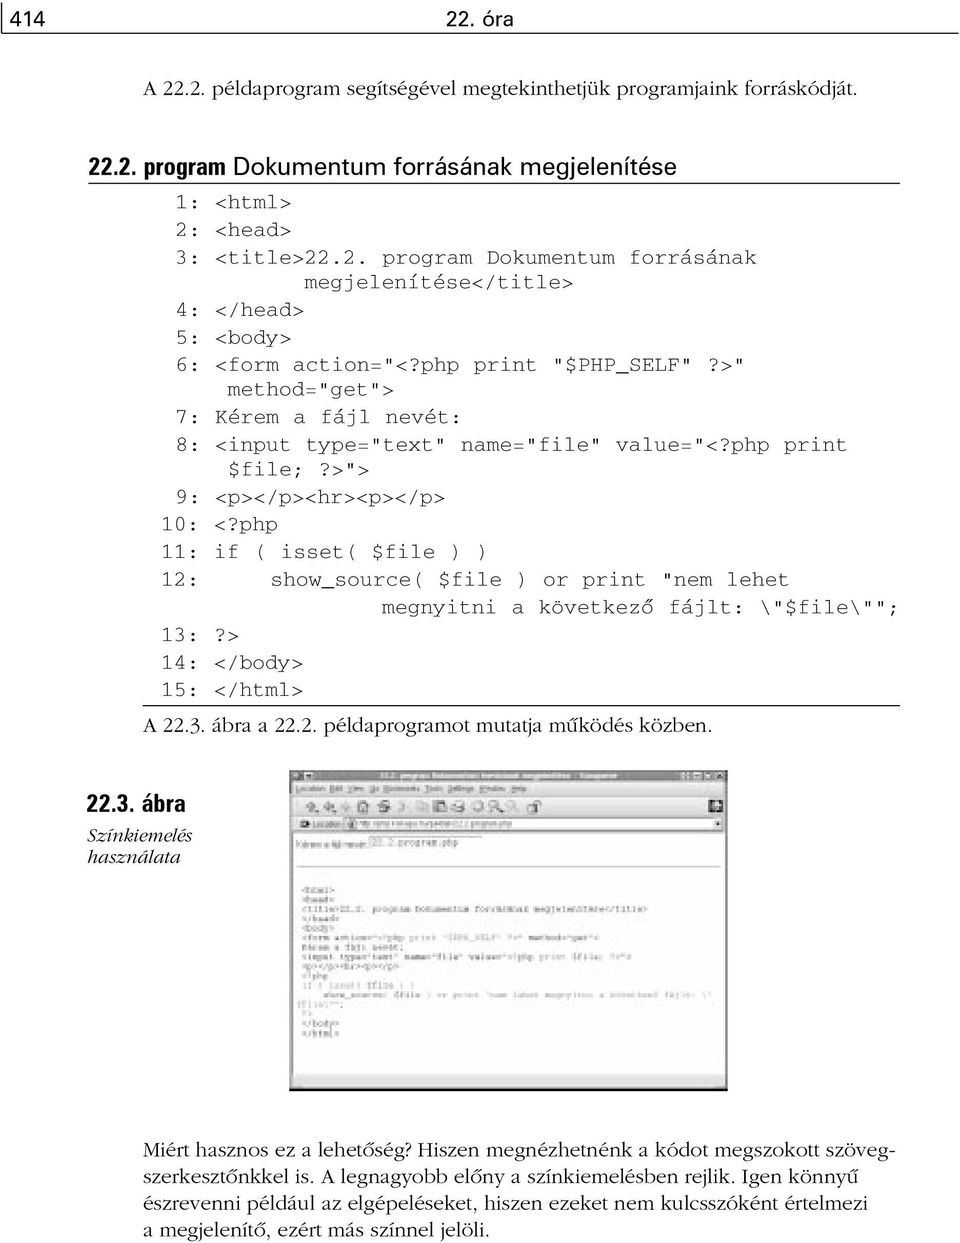 php 11: if ( isset( $file ) ) 12: show_source( $file ) or print "nem lehet megnyitni a következõ fájlt: \"$file\""; 13:?> 14: </body> 15: </html> A 22.3. ábra a 22.2. példaprogramot mutatja mûködés közben.